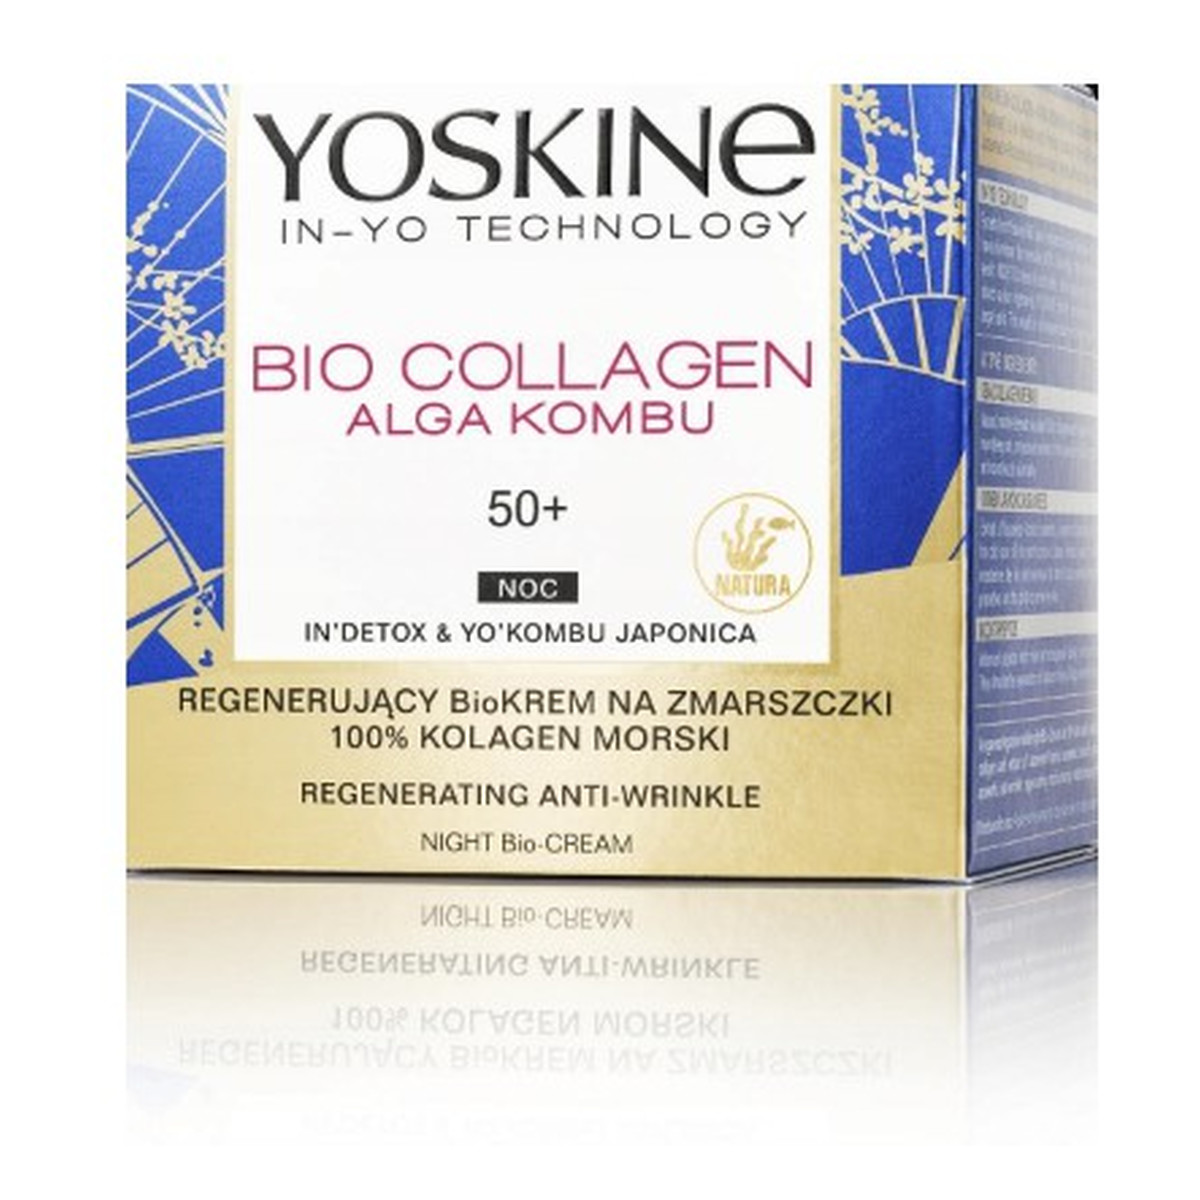 Yoskine Bio Collagen Regenerujący krem przeciwzmarszczkowy do twarzy 50+ na noc 50ml